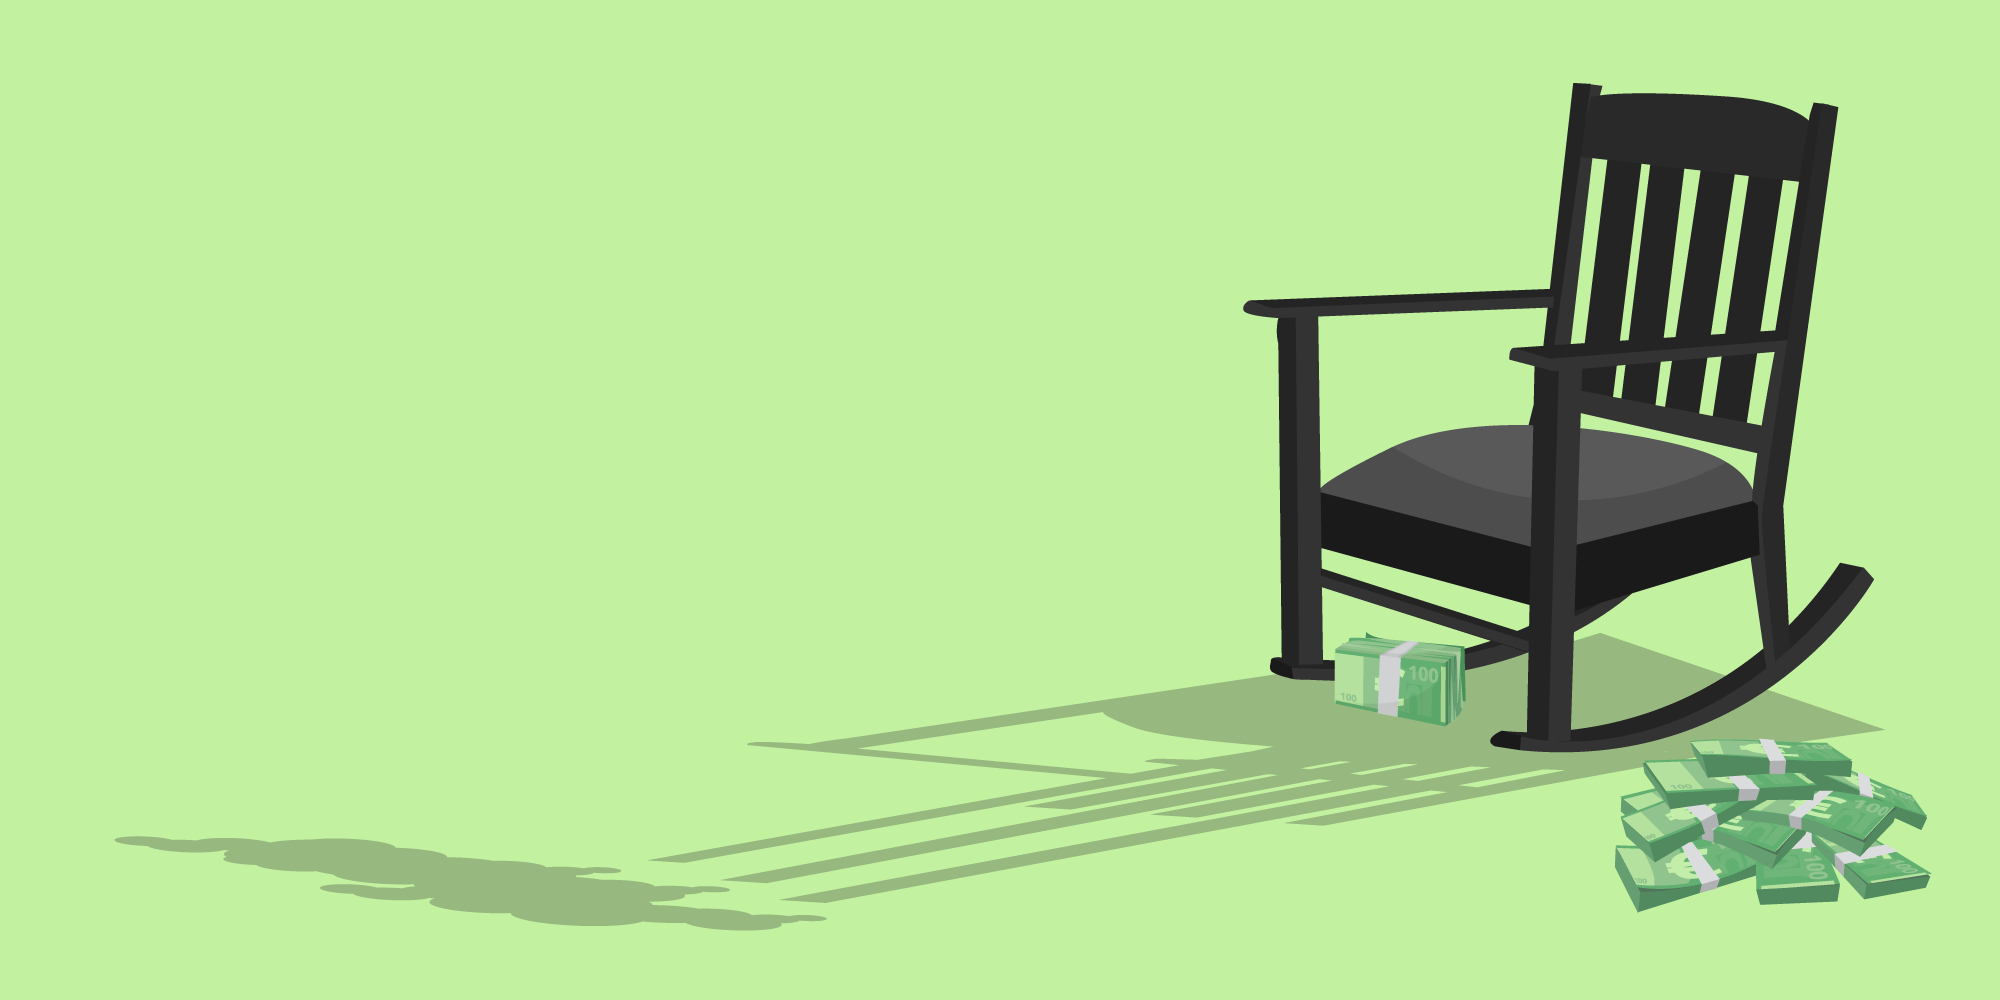 Symbolbild: Ein Schaukelstuhl wirft einen Schatten, der aussieht wie Schornsteine einer Fabrik. Ein Haufen Geldscheine liegt auf dem Boden.